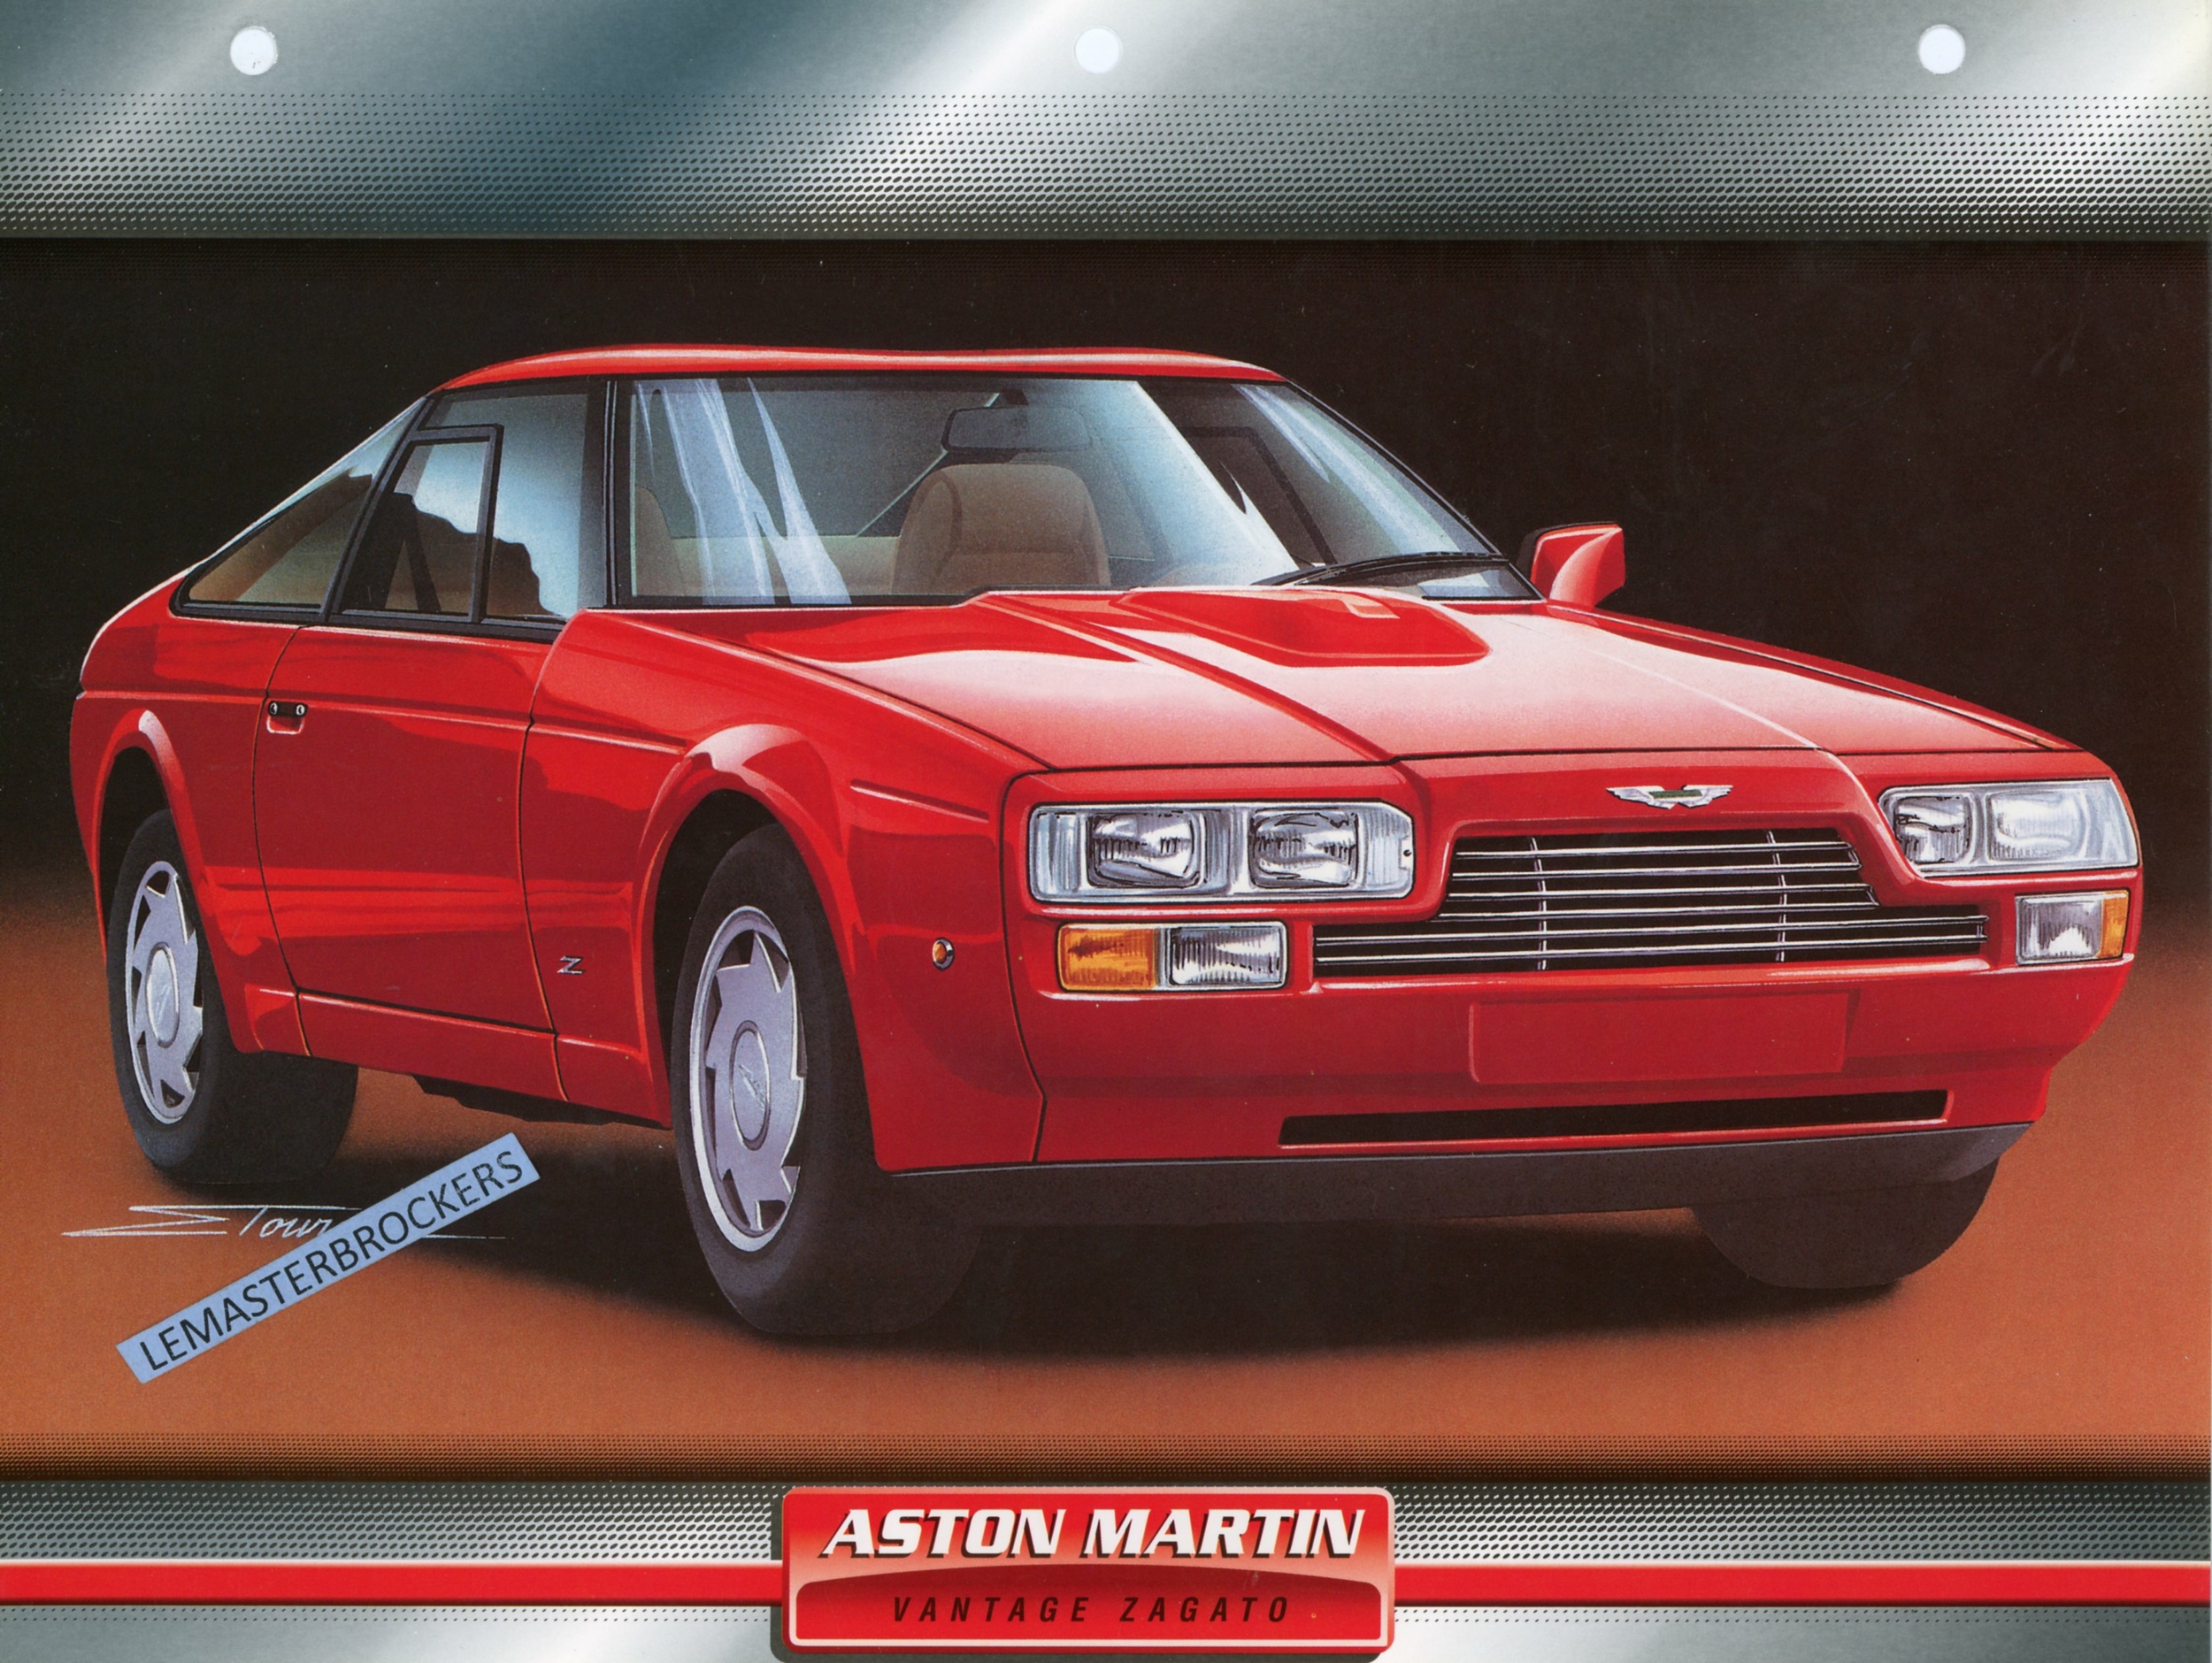 ASTON MARTIN VANTAGE ZAGATO 1986 - FICHE AUTO ATLAS LITTÉRATURE AUTOMOBILE CARACTÉRISTIQUES TECHNIQUES